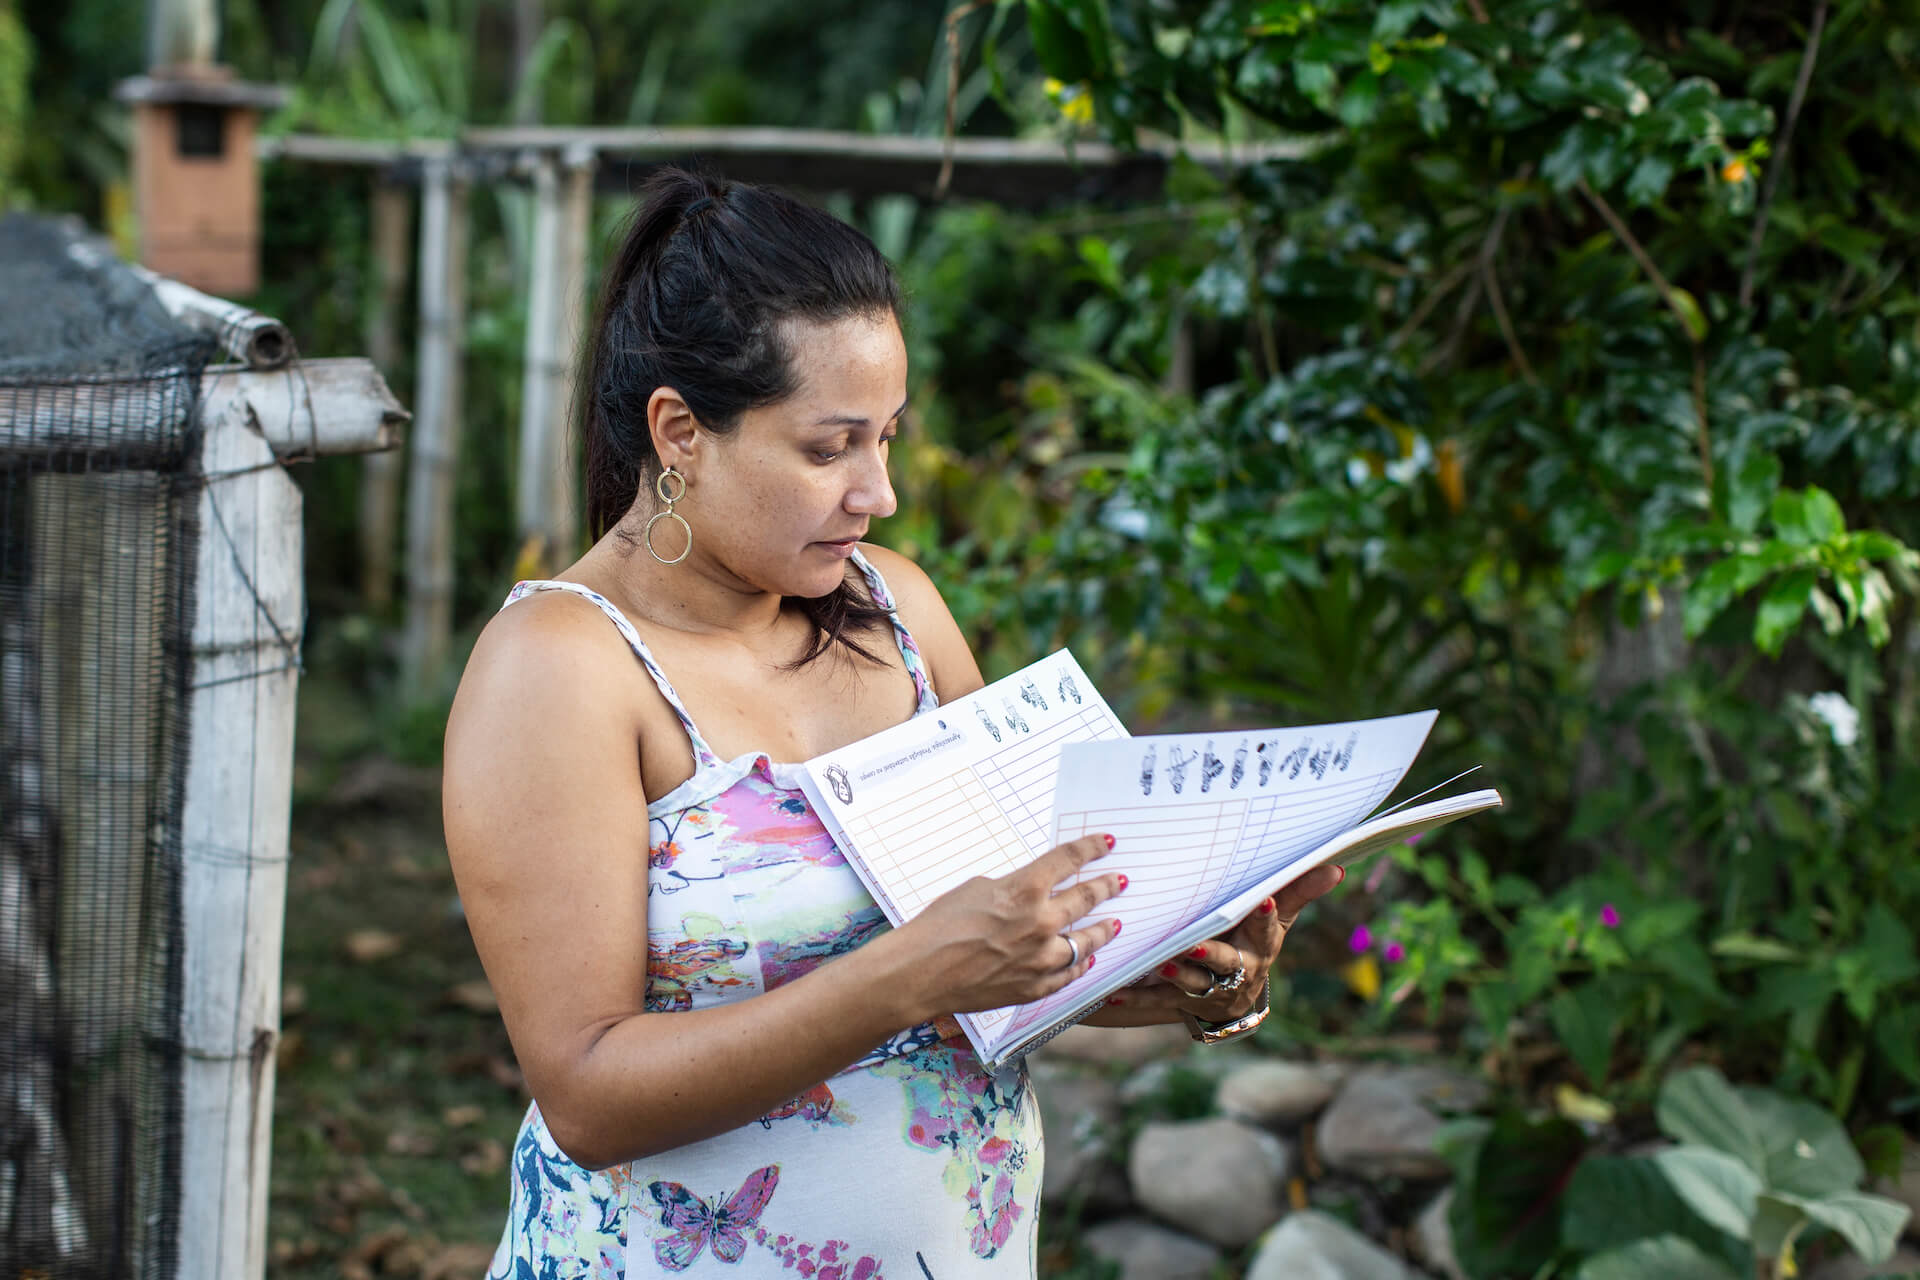 Janette Dantas, de 33 años, embarazada de siete meses en la foto, es una de varias mujeres agricultoras en Brasil que están liderando una revolución silenciosa al talar sus propios productos. 